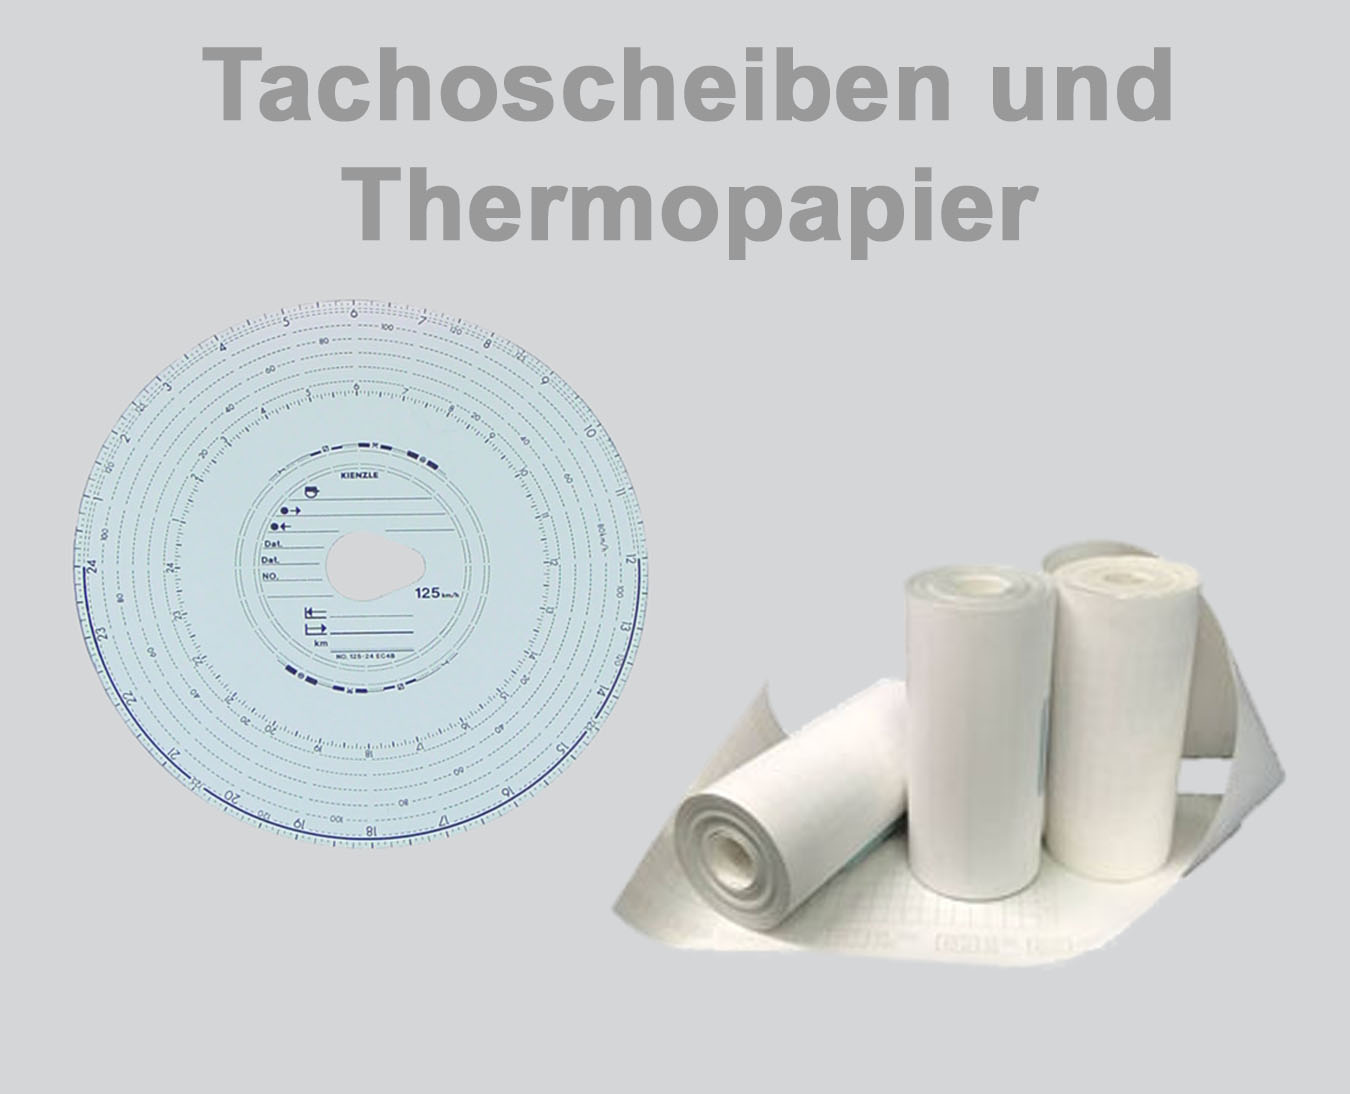 Tachoscheiben und Thermopapier 